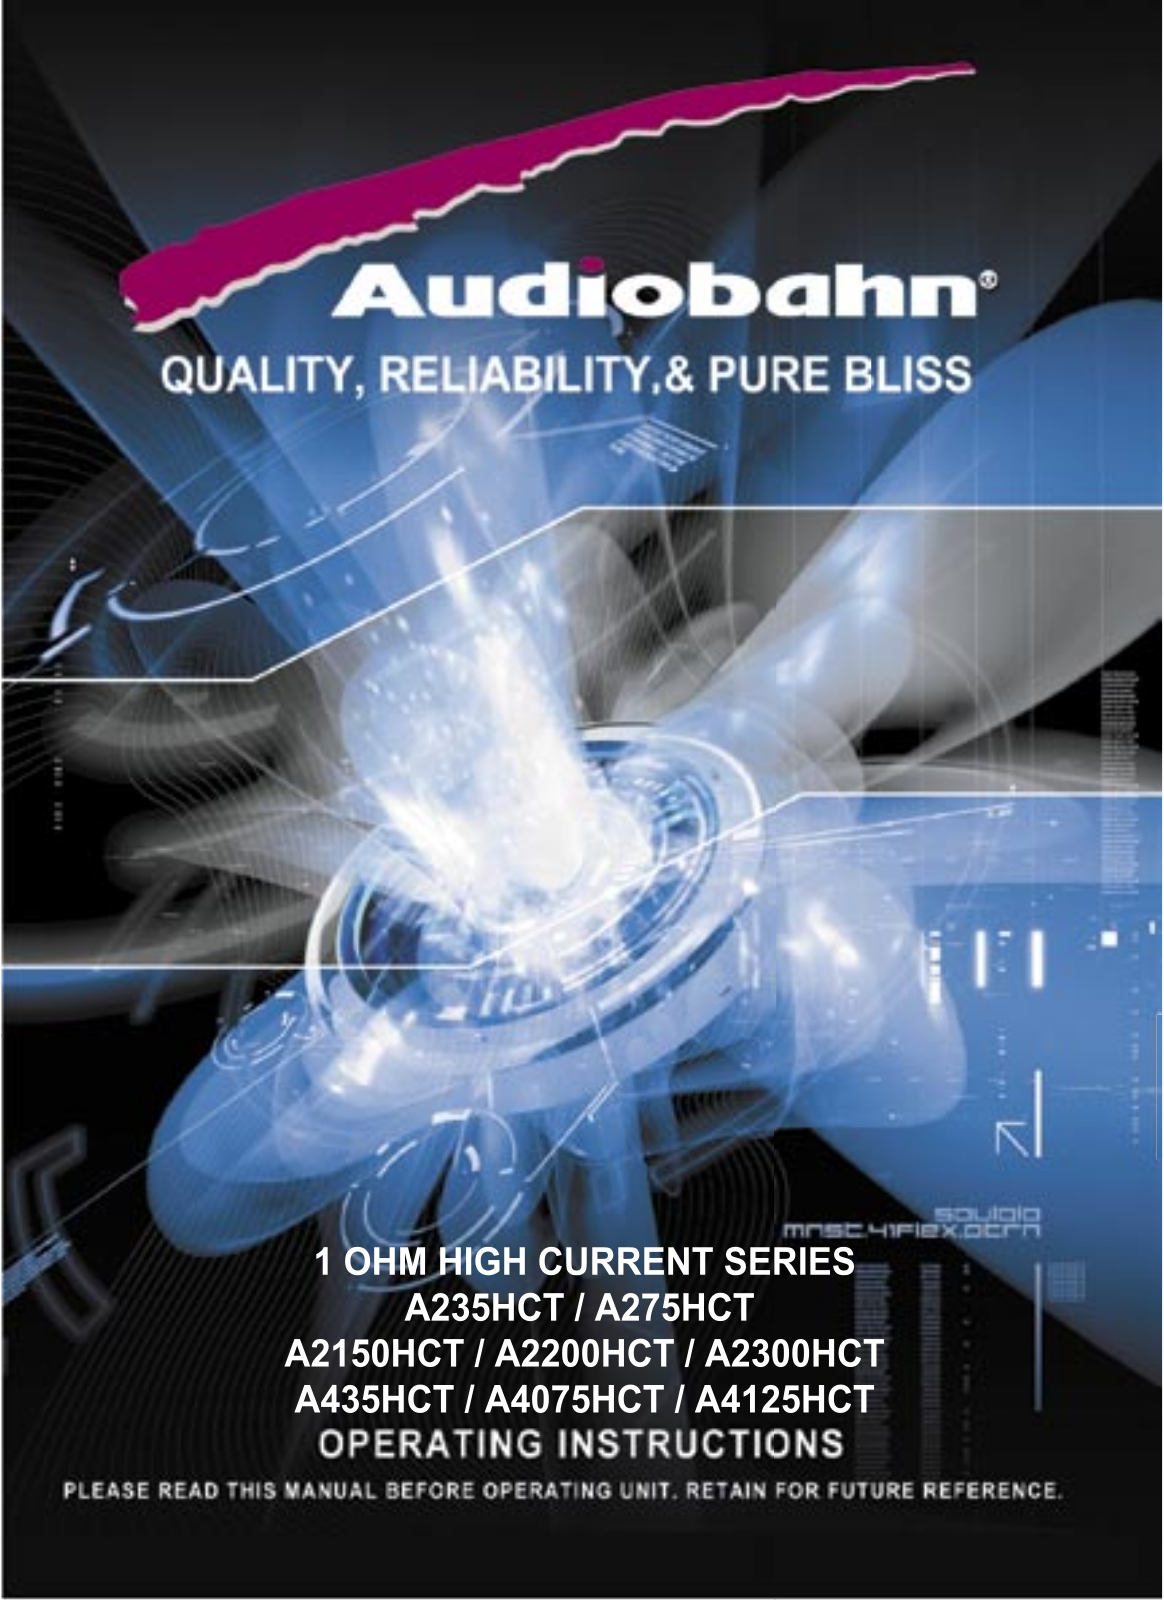 Audiobahn A235HCT, A275HCT, A2150HCT, A2200HCT, A2300HCT Manual